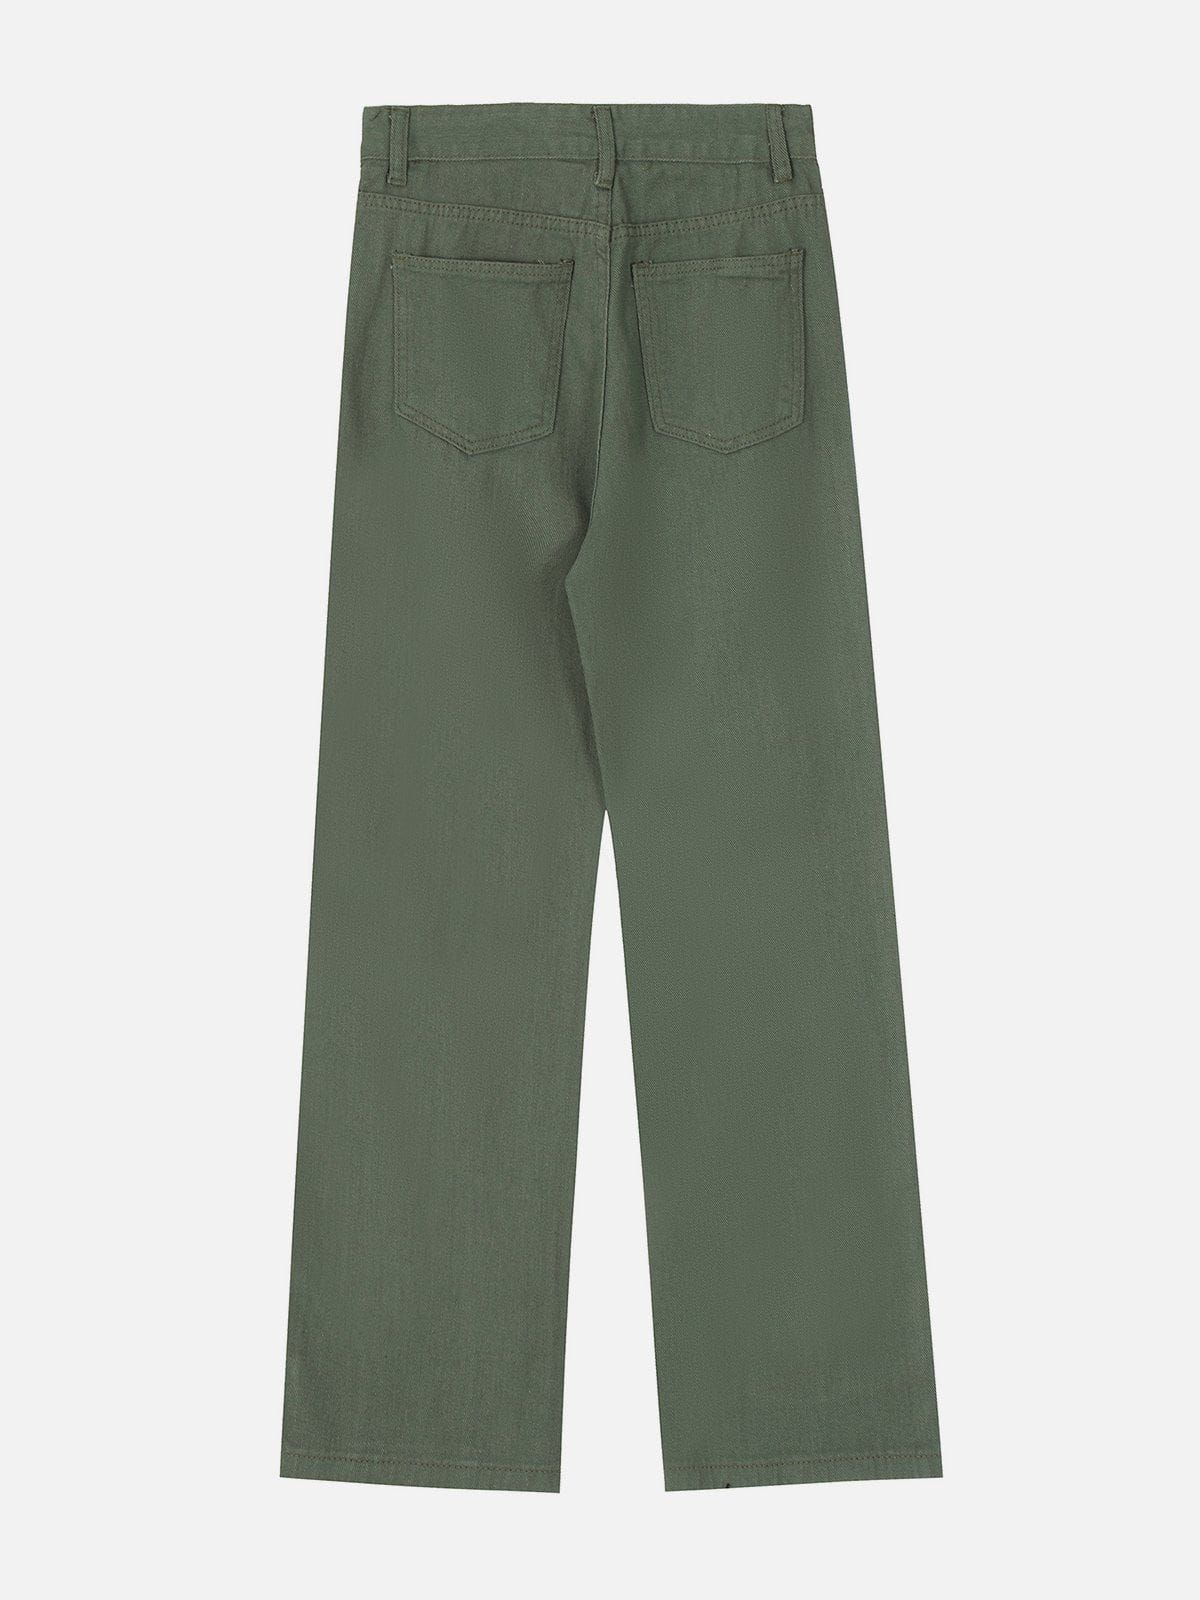 Eprezzy® - Lace Up Raw Pocket Pants Streetwear Fashion - eprezzy.com